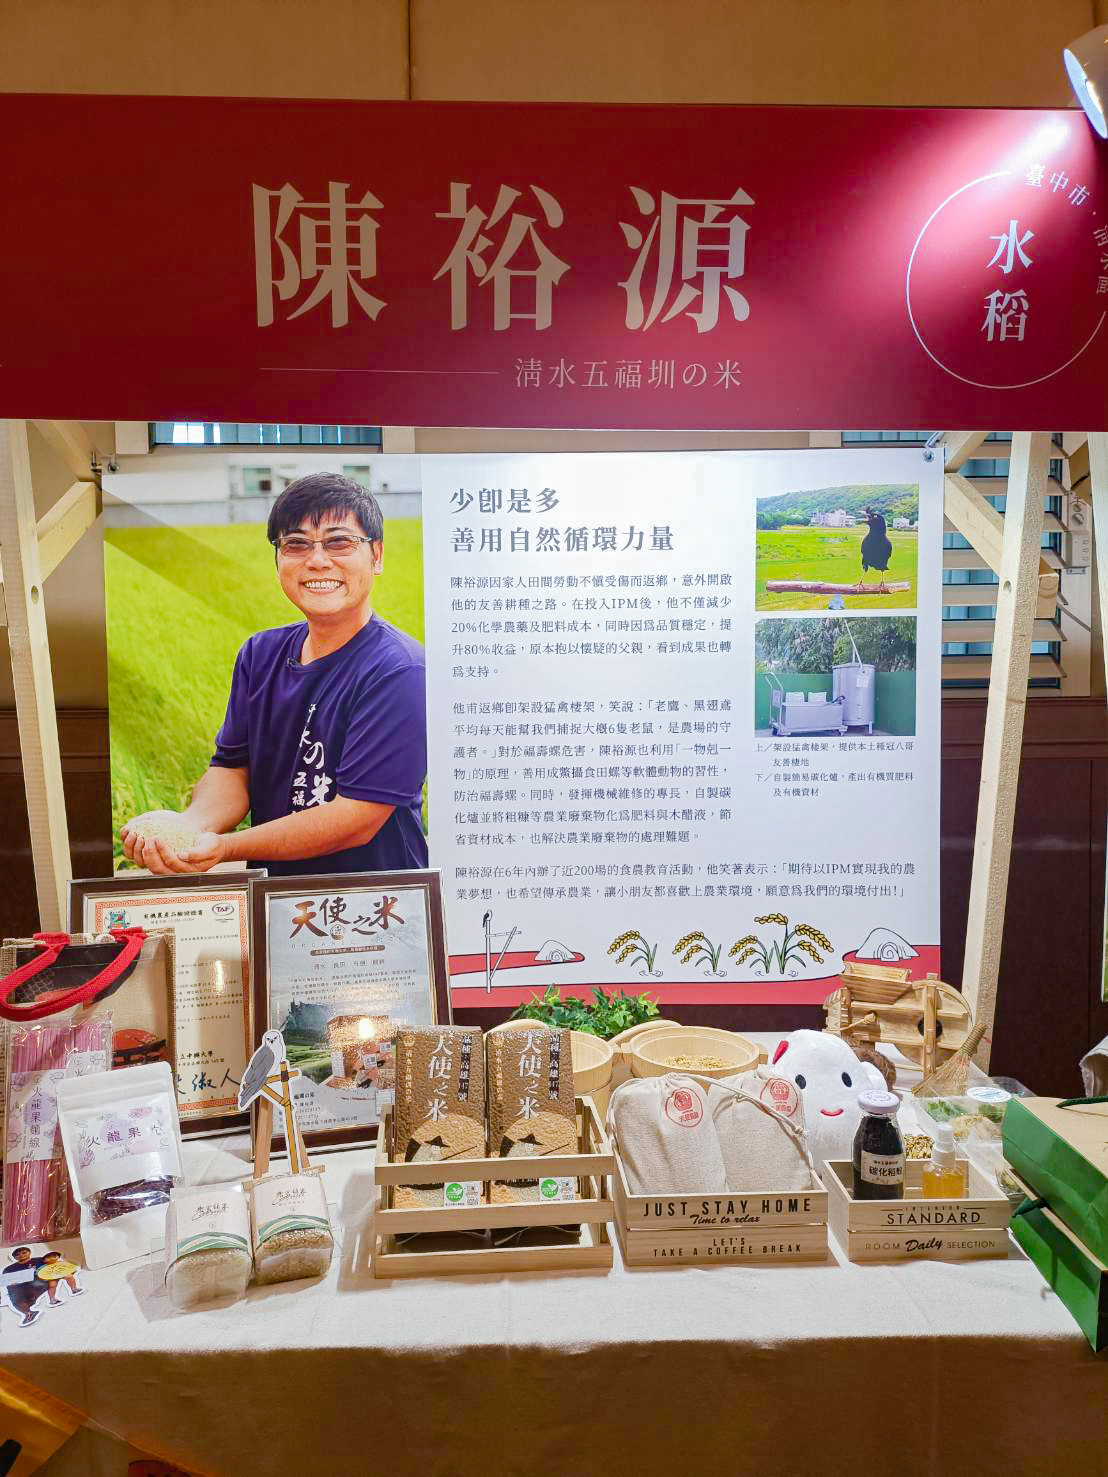 第三屆永續善農獎IPM Award臺中市清水區陳裕源青農現場展示栽培成果。